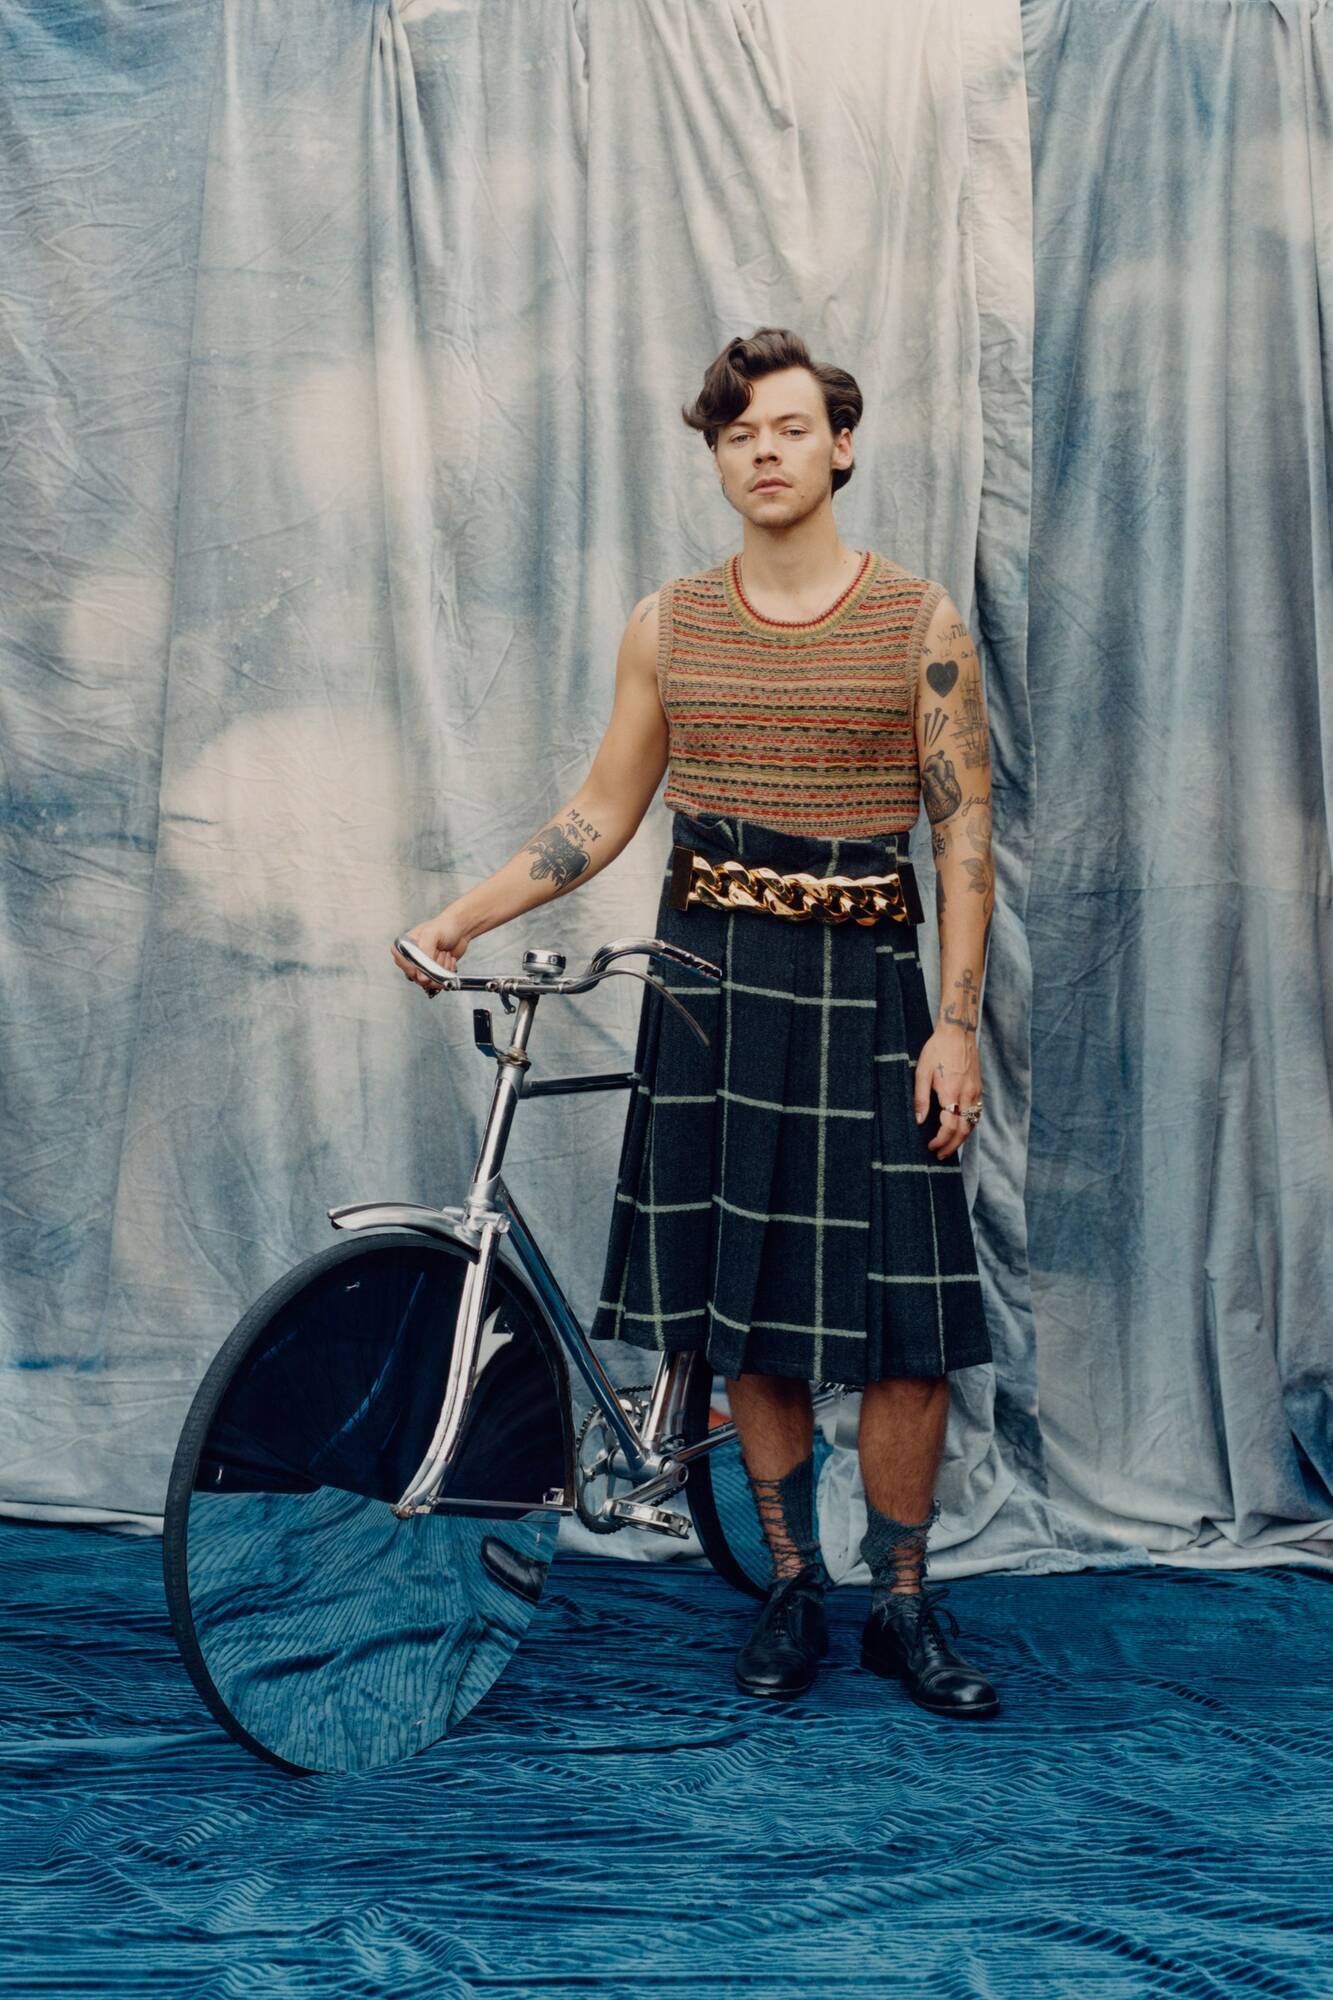 Гаррі Стайлс з'явився на обкладинці журналу "Vogue" у жіночому одязі